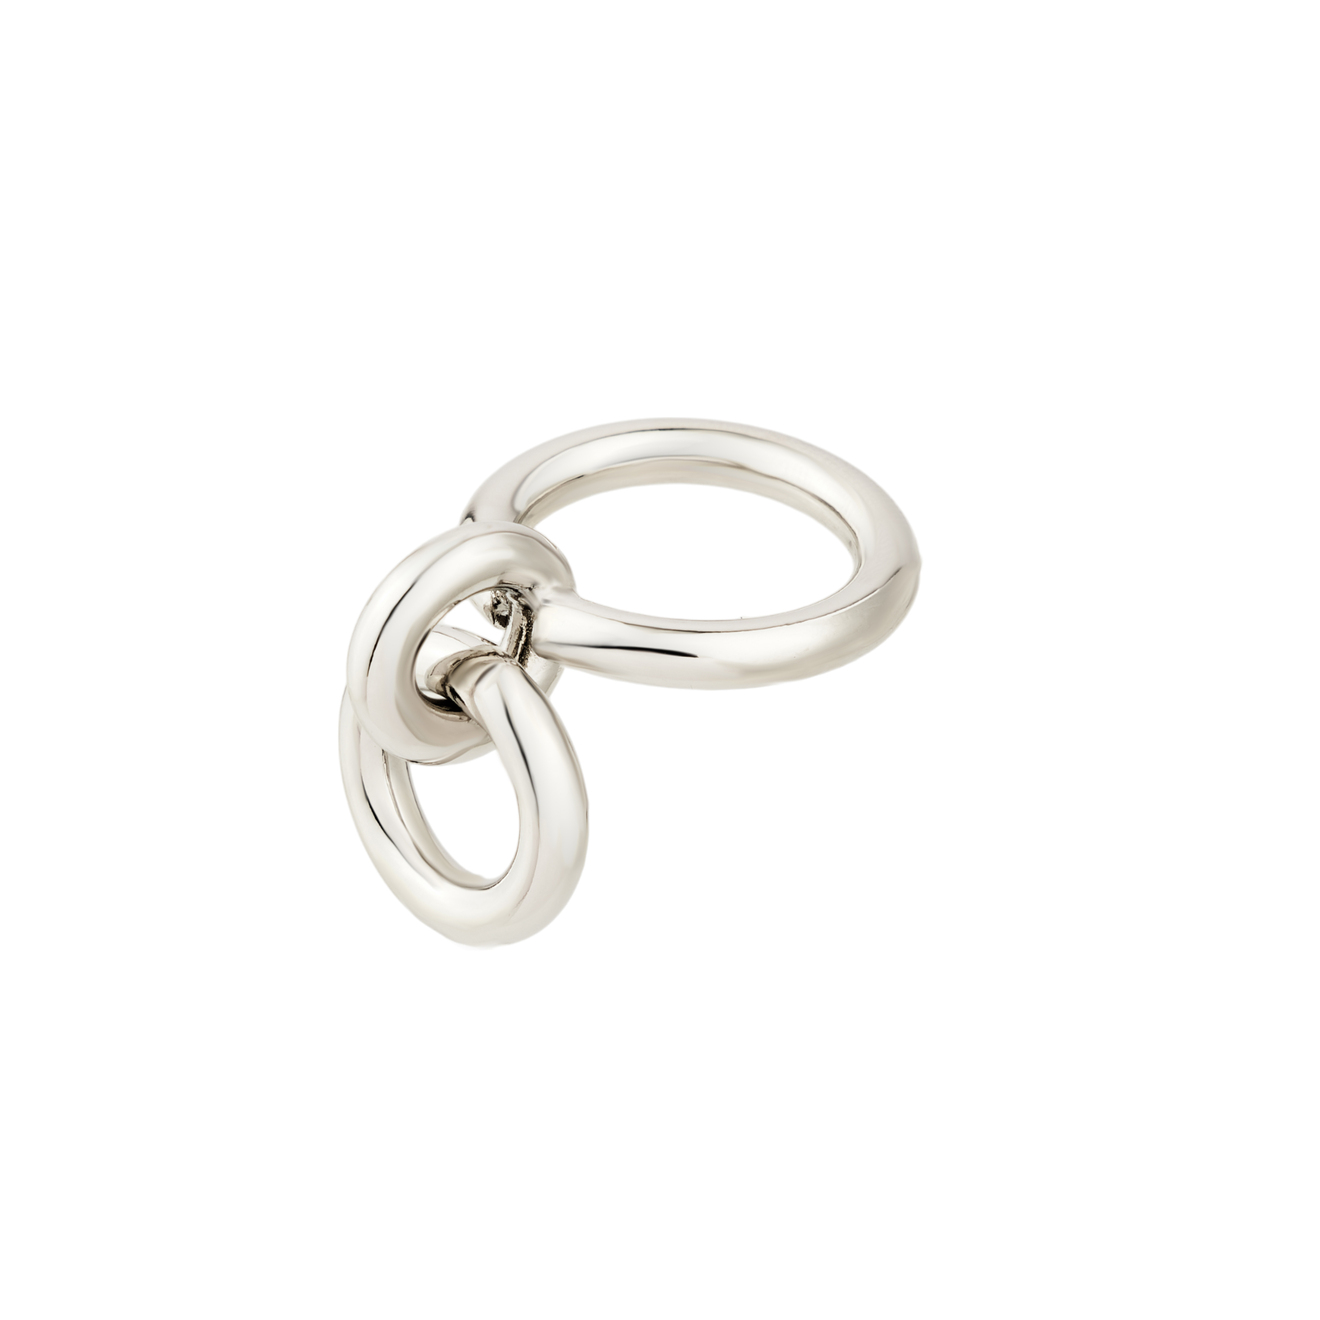 Aloud Серебристое кольцо с круглой подвеской lisa smith многослойное серебристое колье с круглой подвеской и золотистой вставкой